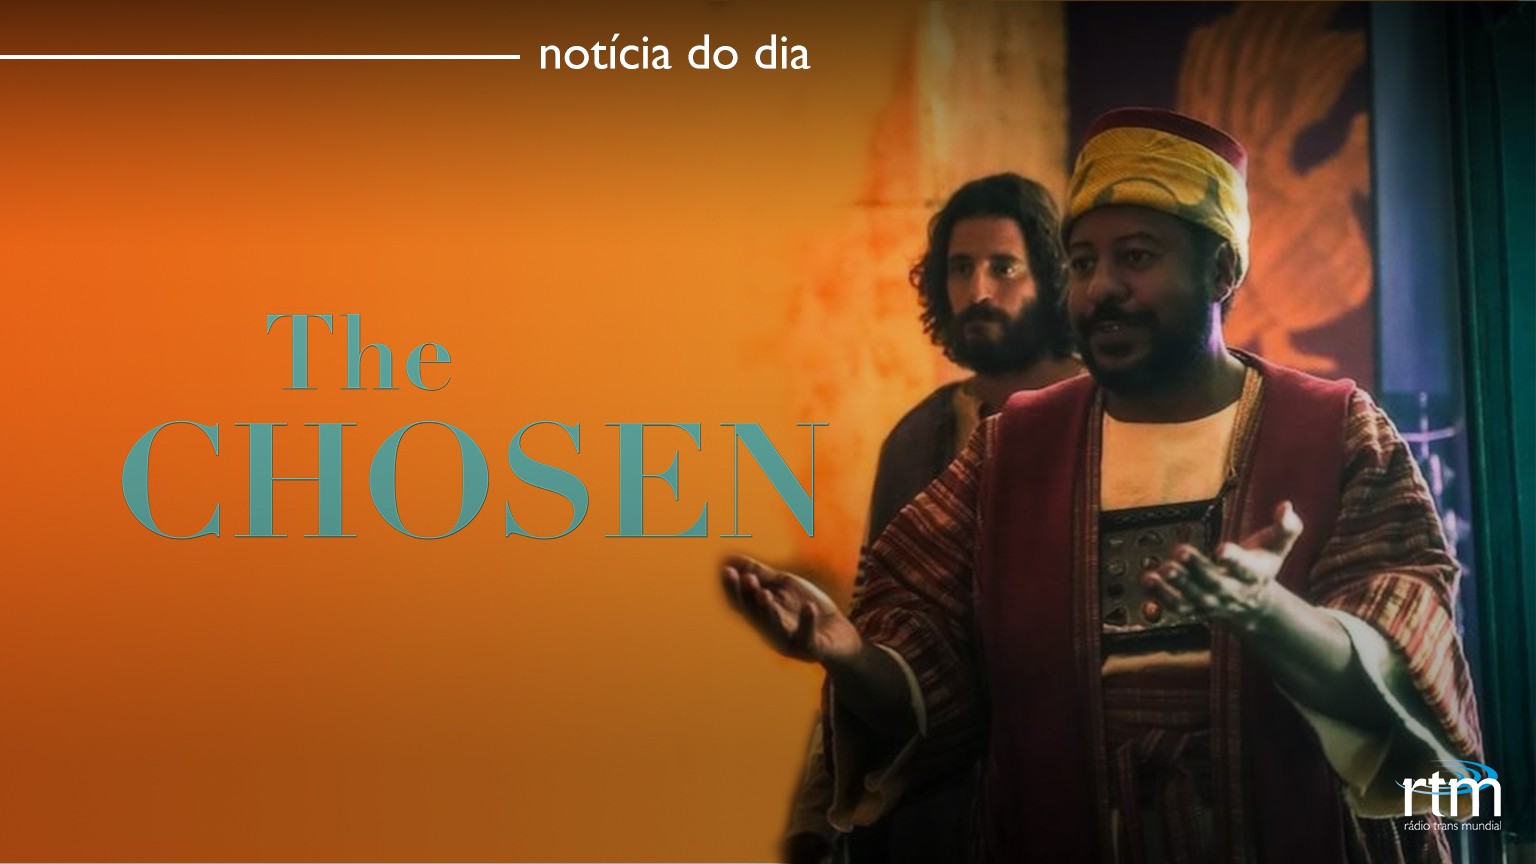 Arquivo de The Chosen Dublado em Português gratis